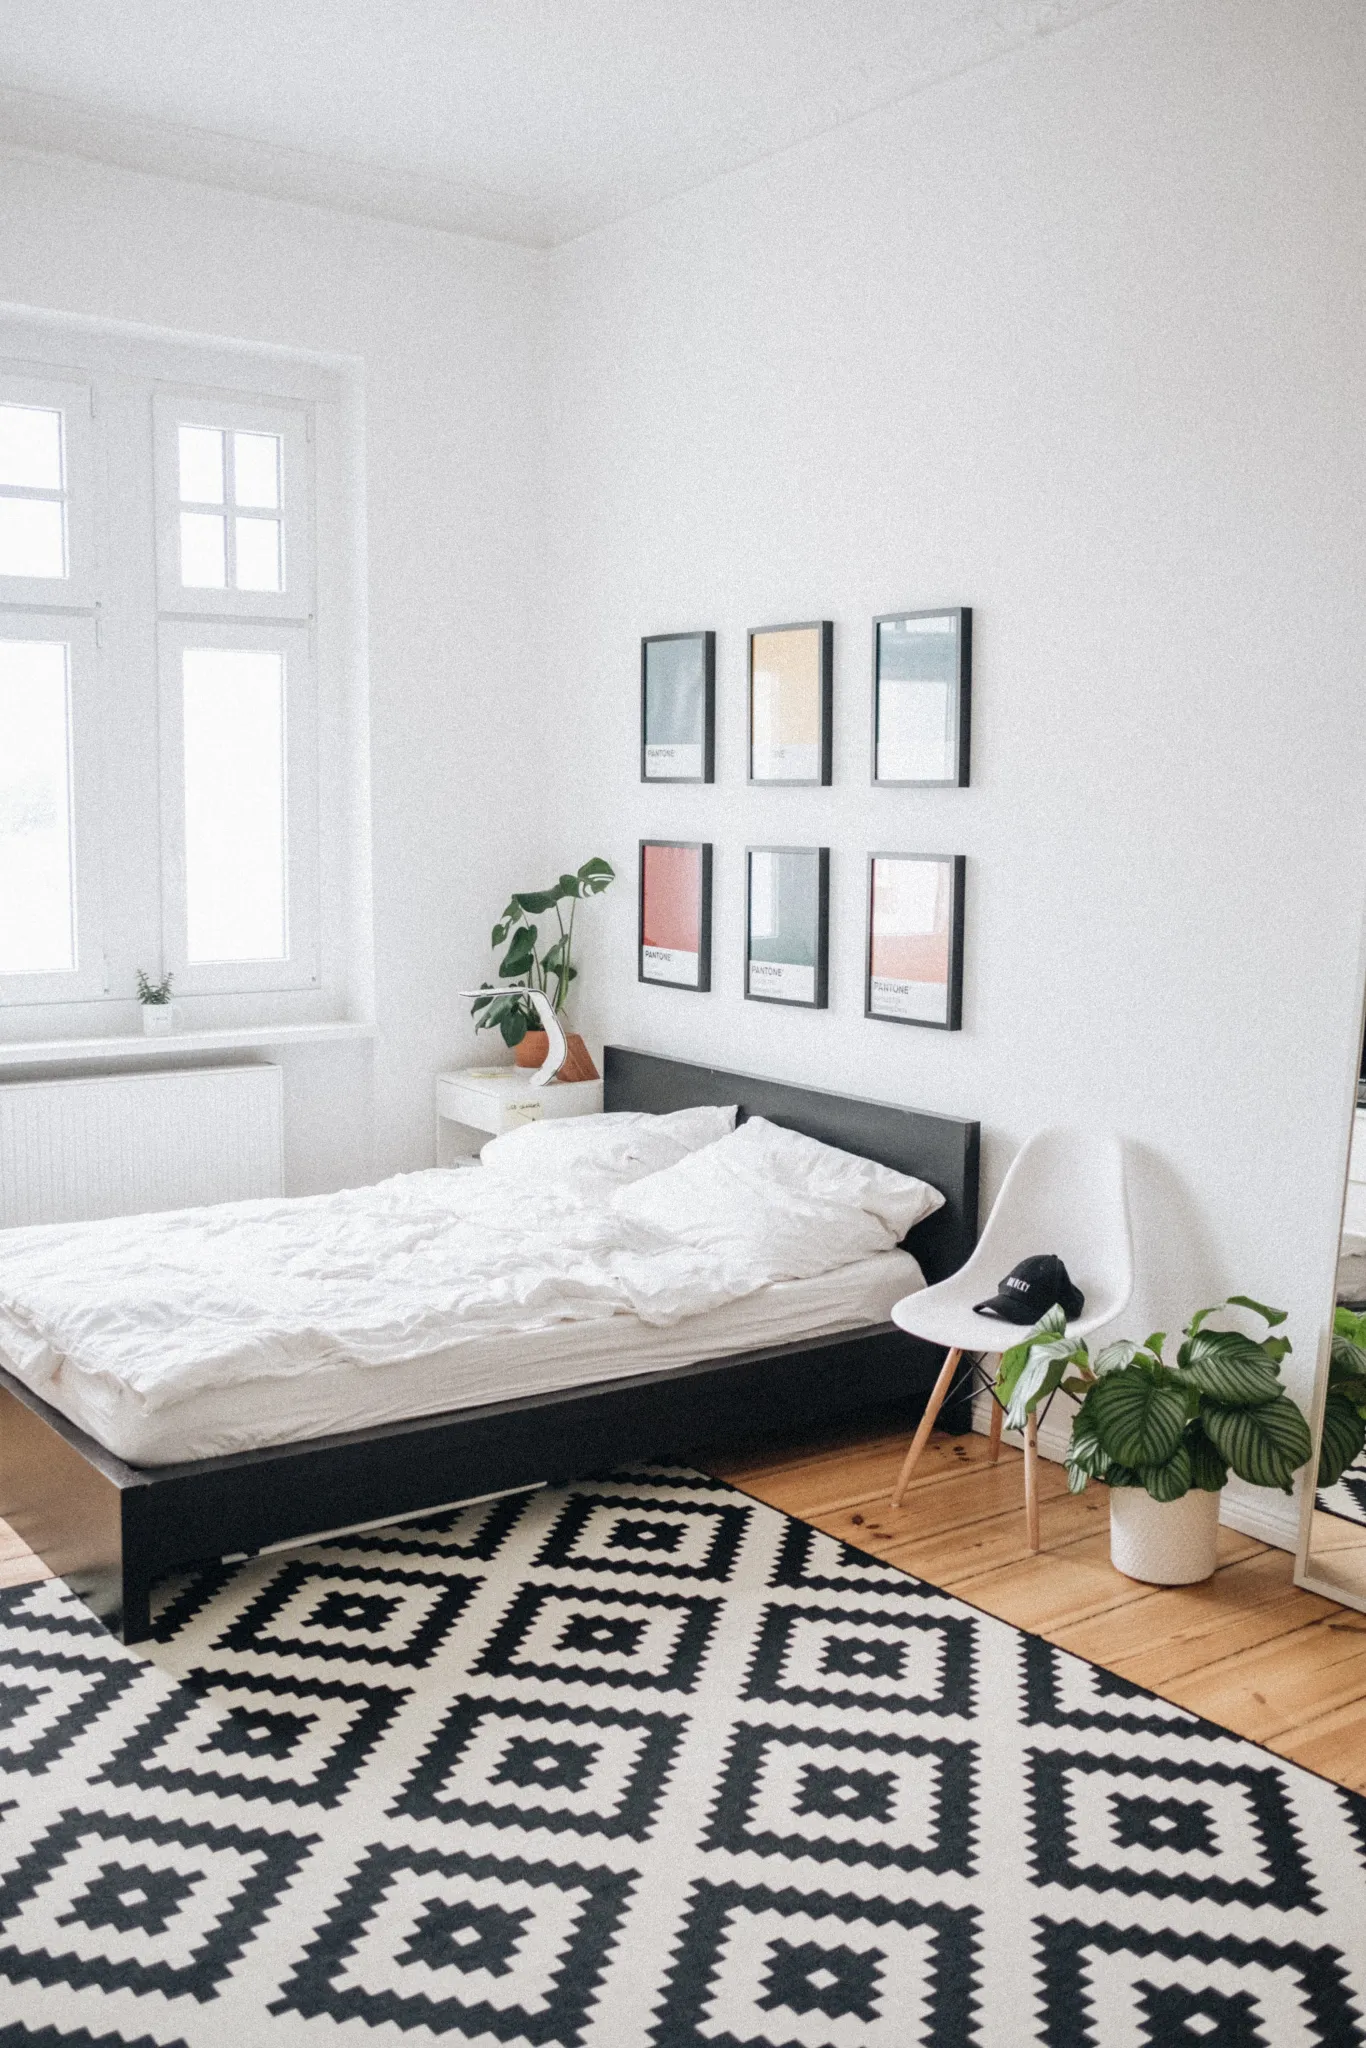 Una camera da letto moderna con un motivo a rombi bianchi e neri.